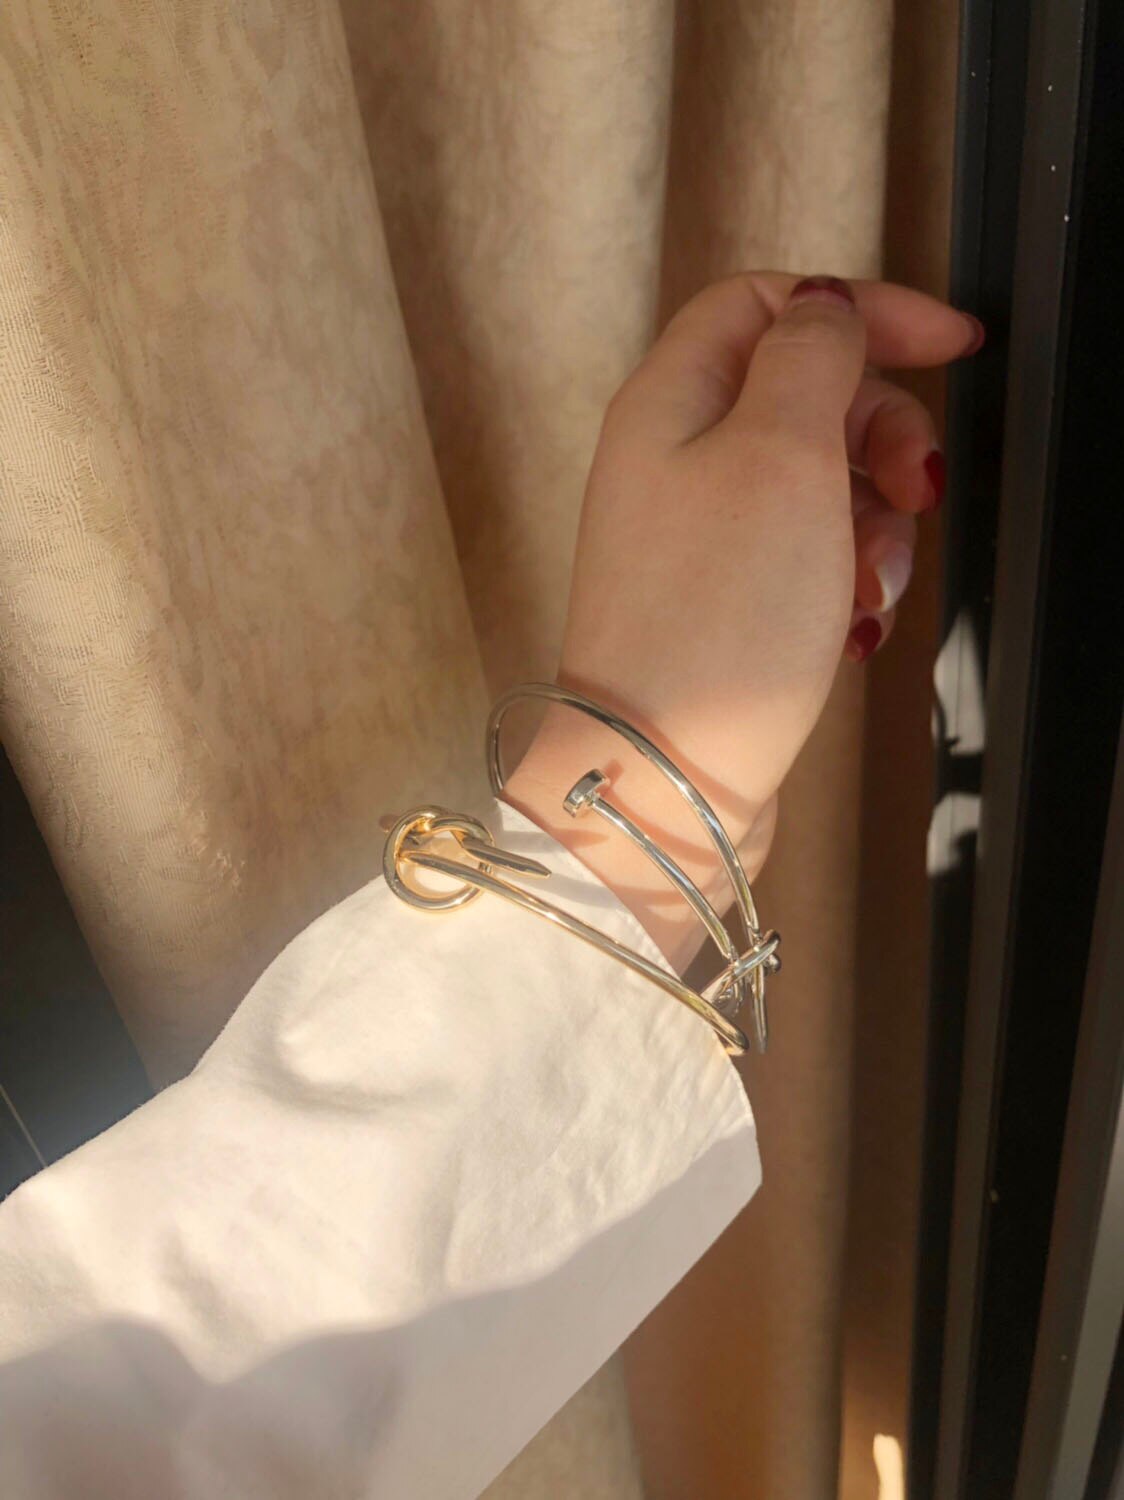 Huanzhi korean guld sølv farve manchet negle slips armbånd legering justerbar charme enkel stil armbånd til kvinder smykker